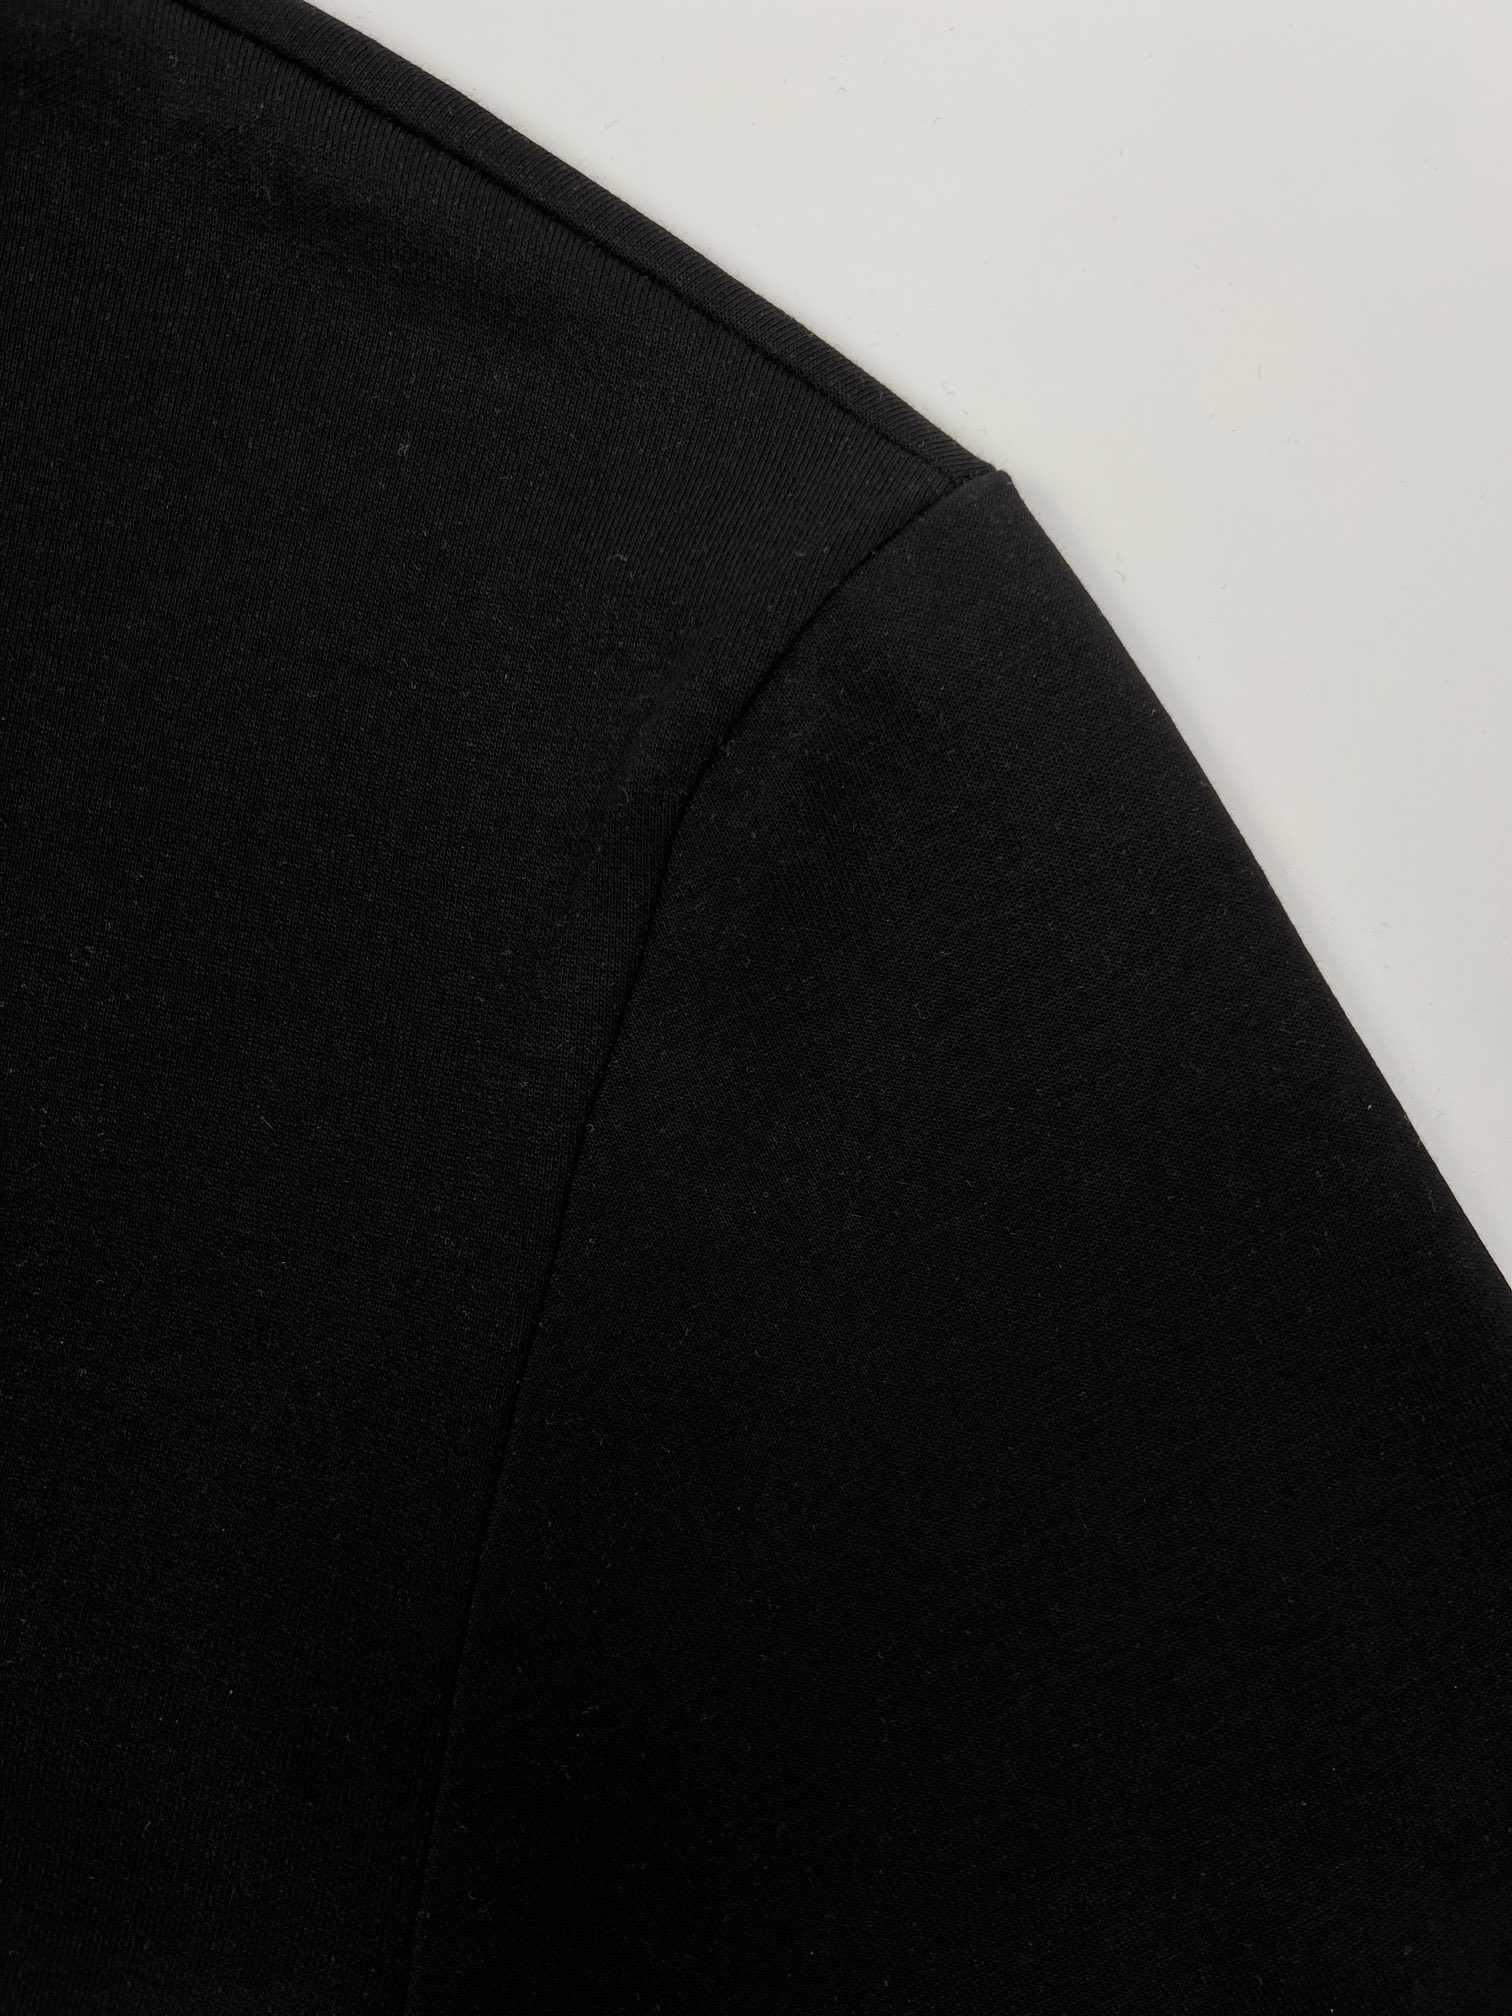 Fendi工匠短袖面料采用260克全棉双面面料手感柔软舒适亲肤搭配胸前8种不同“工具”图标富有内涵的独特